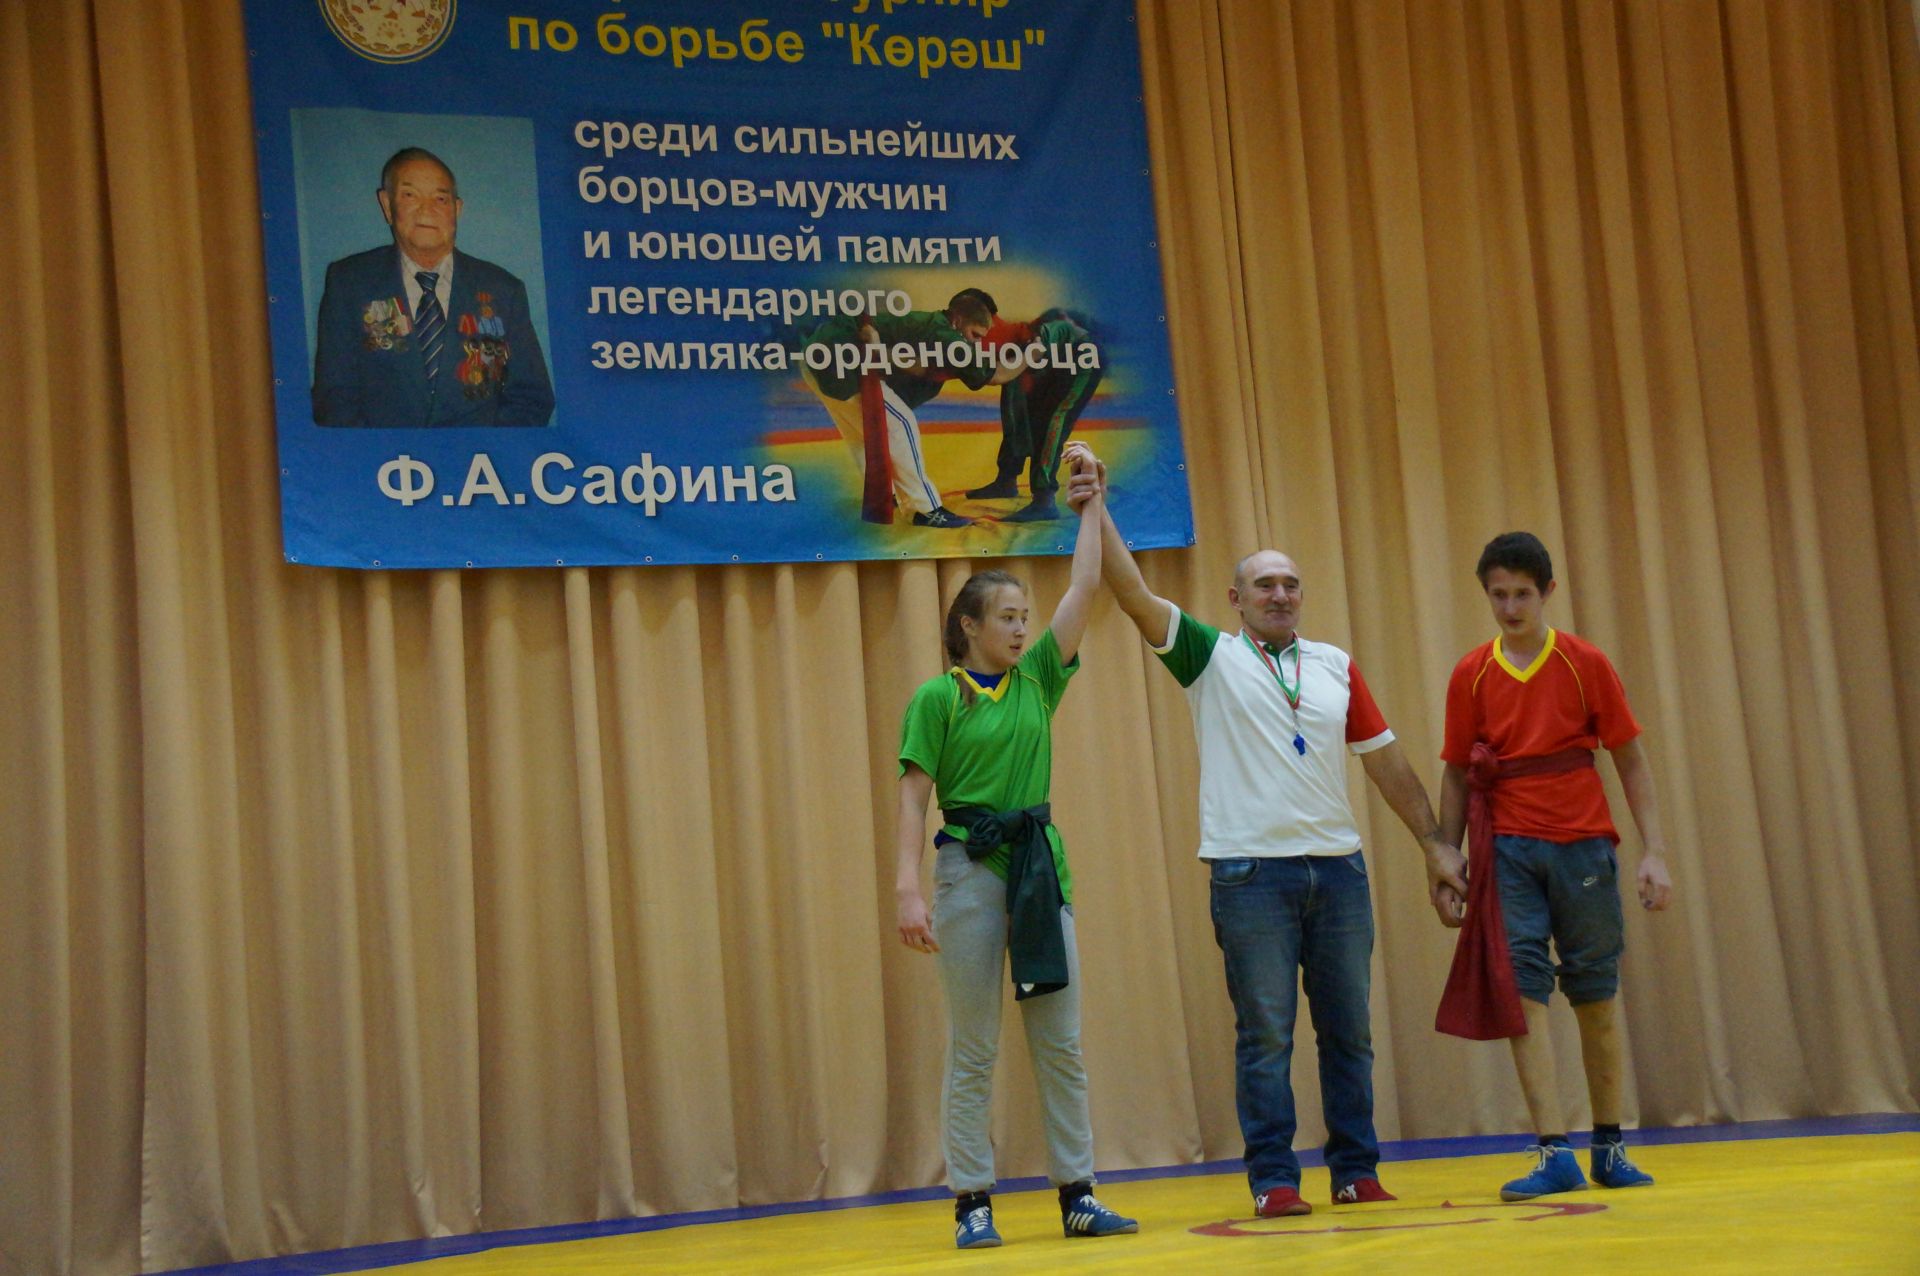 В Шалях прошел восьмой открытый турнир по борьбе «Корэш»